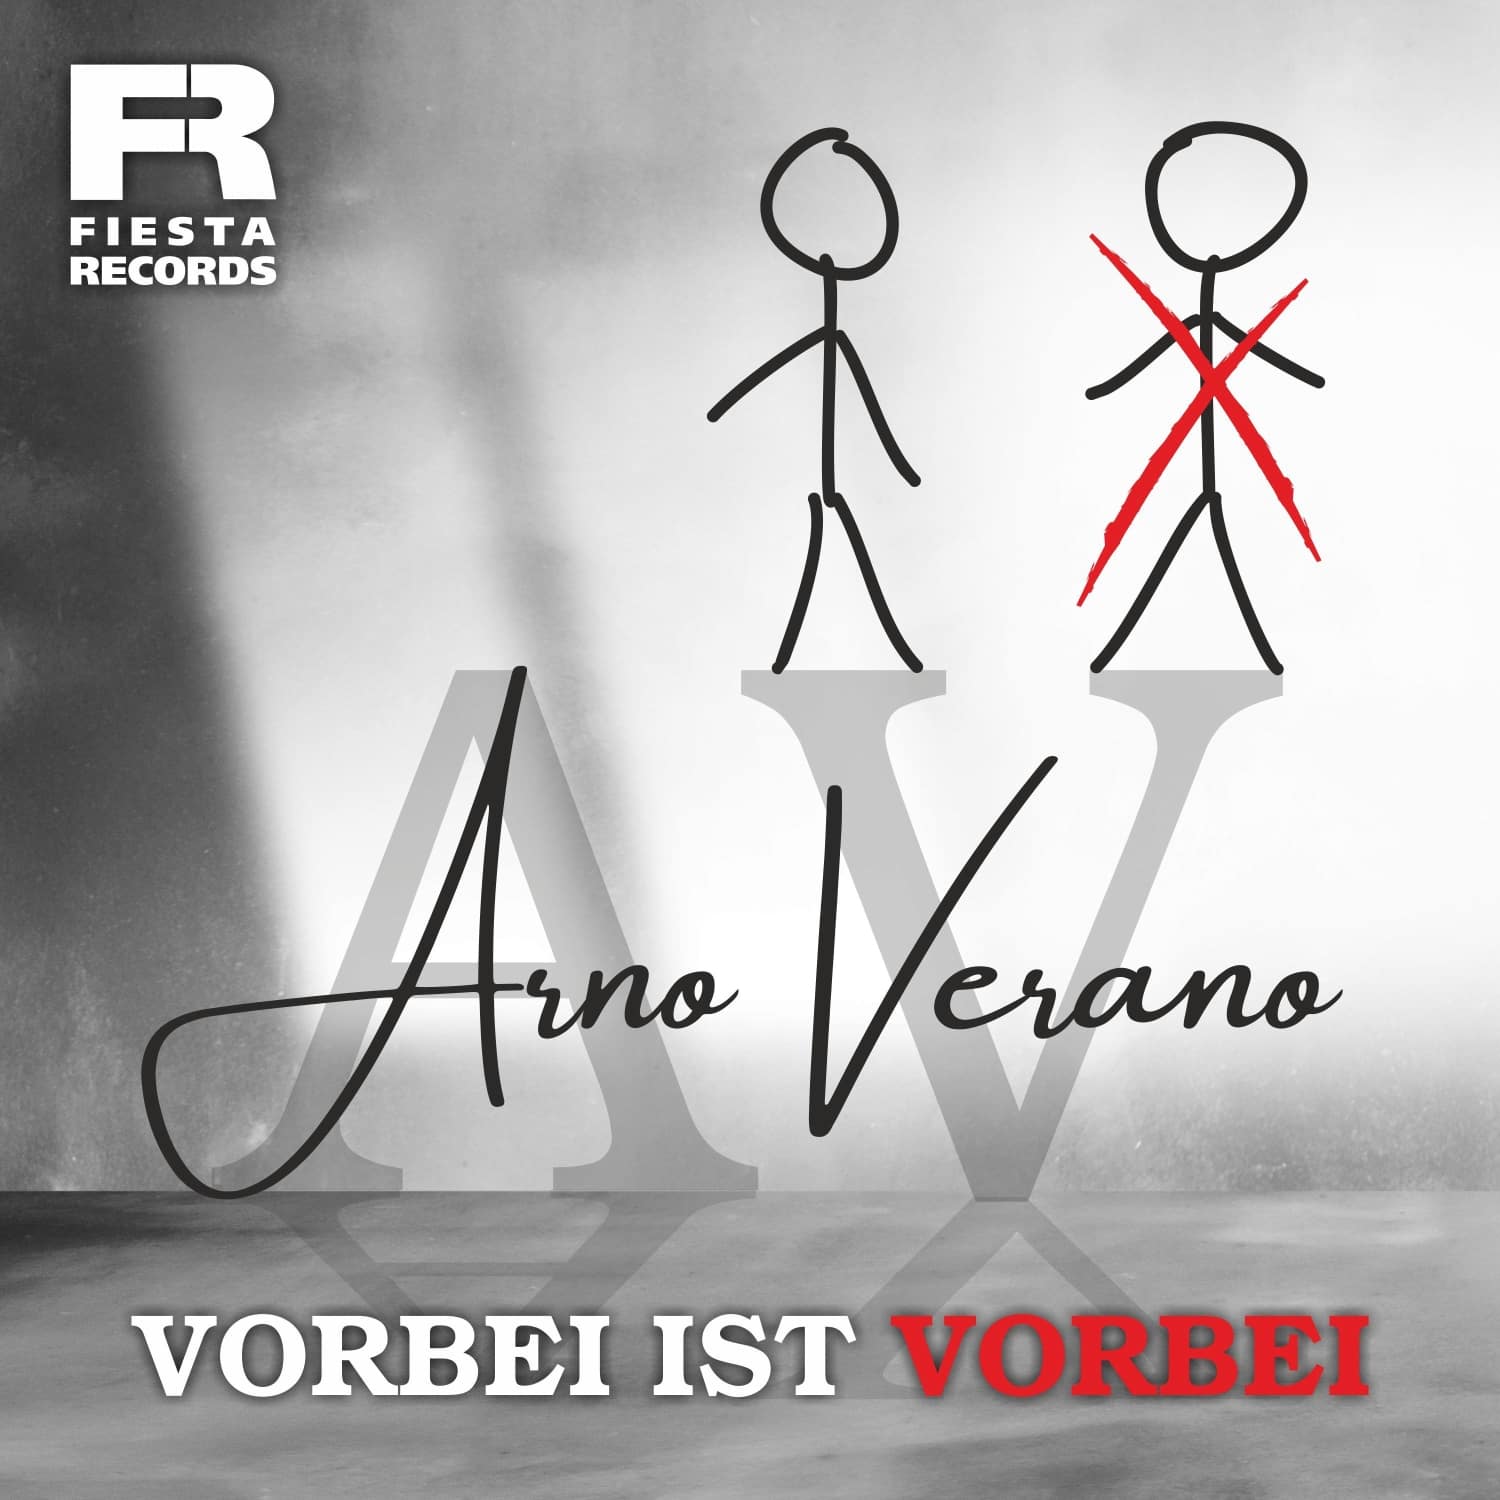 Arno Verano - Vorbei ist vorbei (Fiesta Records)